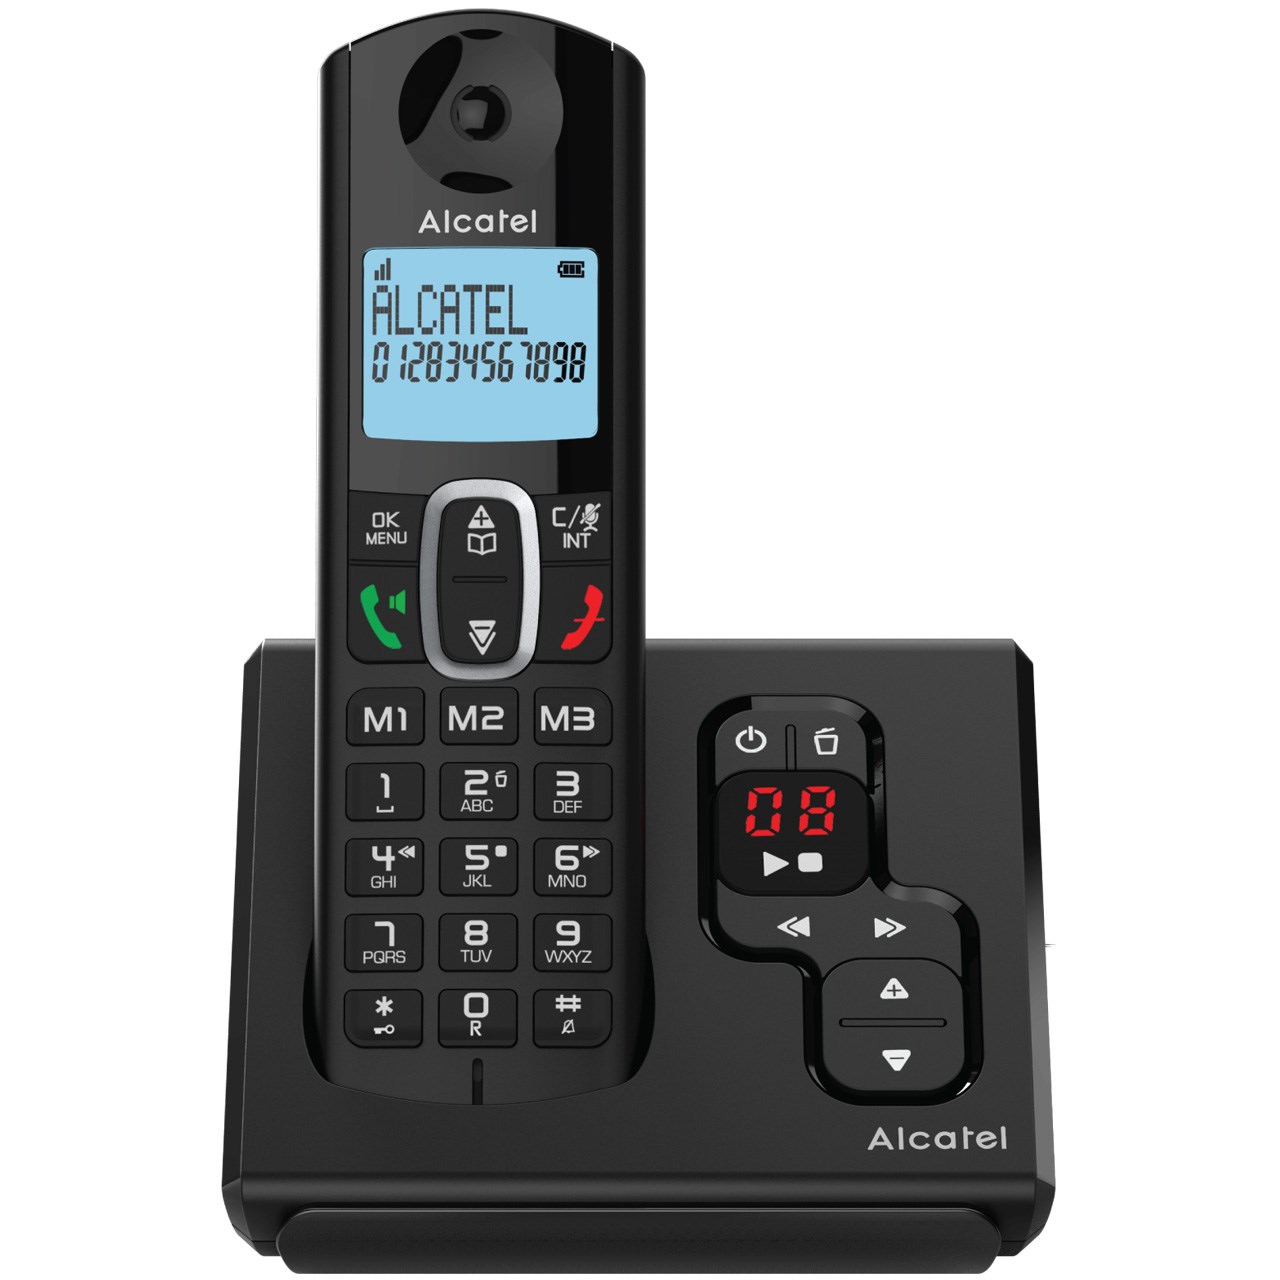 نکته خرید - قیمت روز تلفن بی سیم آلکاتل مدل F680 Voice خرید